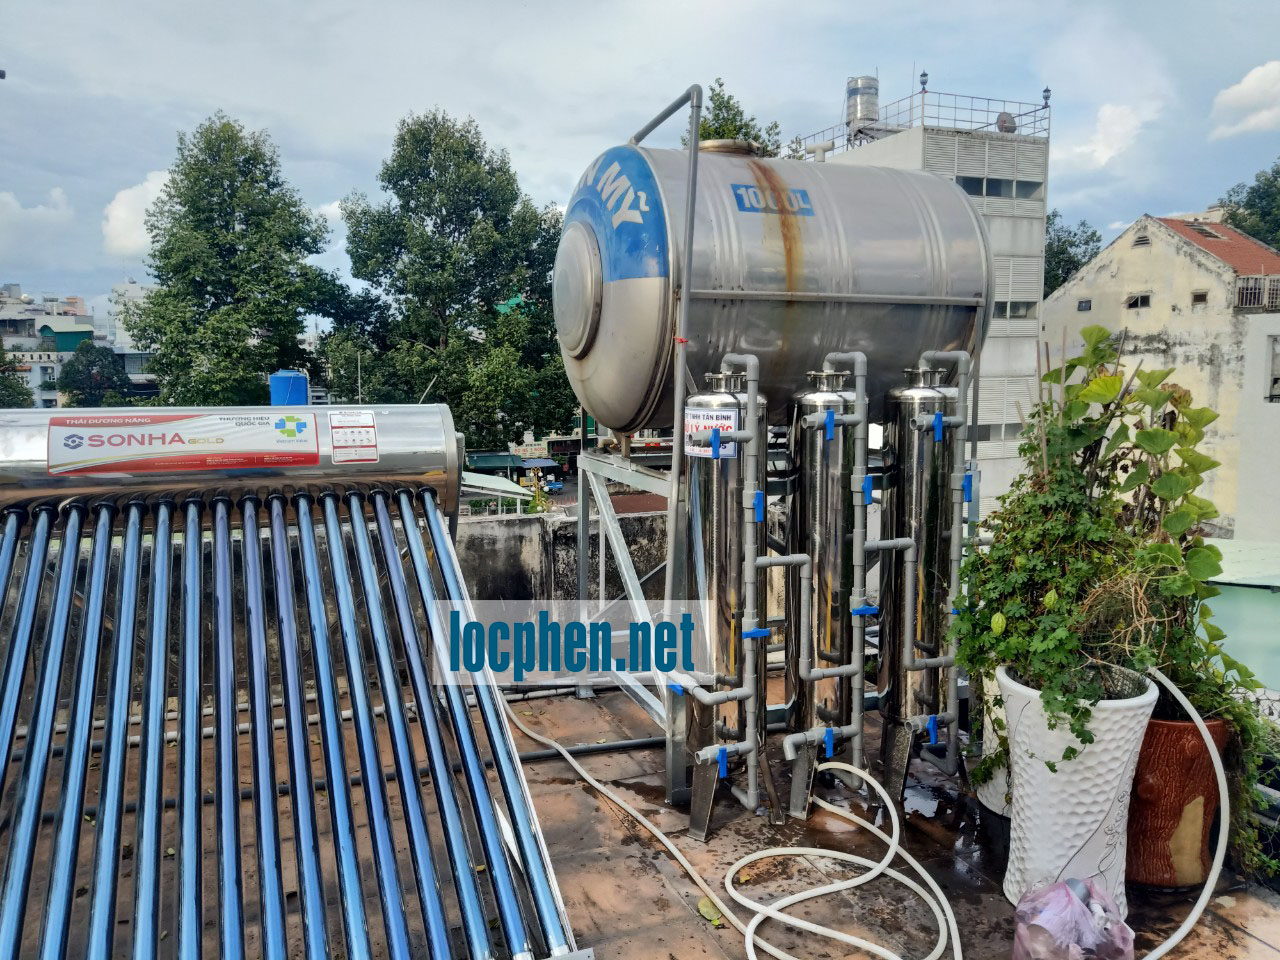 hệ thống lọc nước máy